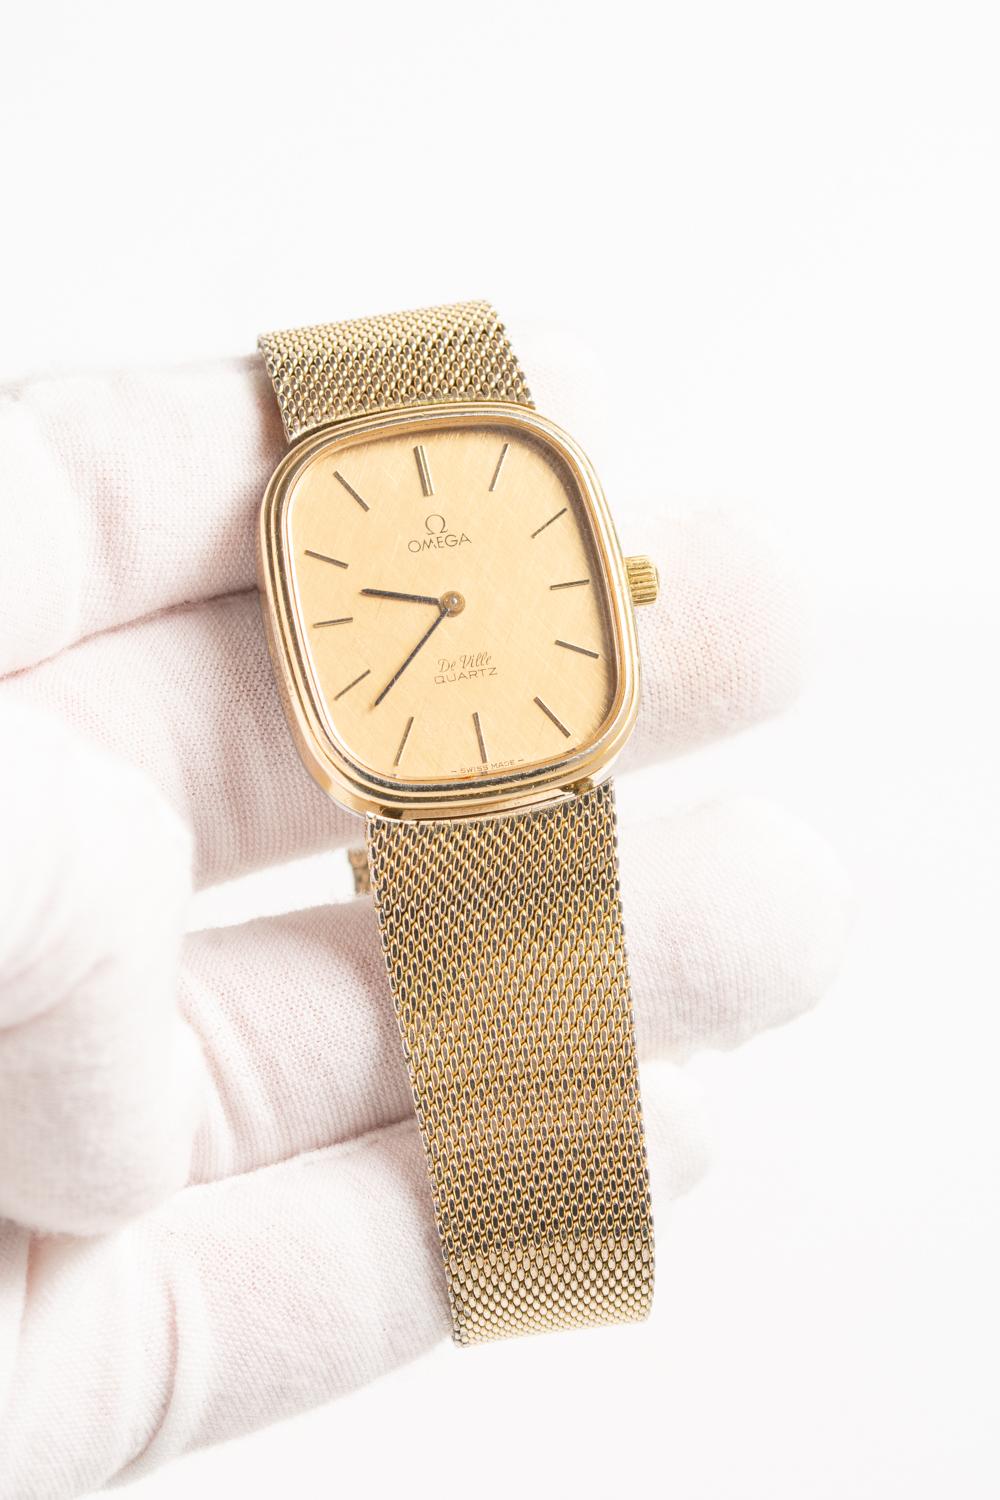 Vintage Omega De Ville Gold Tone Wristwatch 4